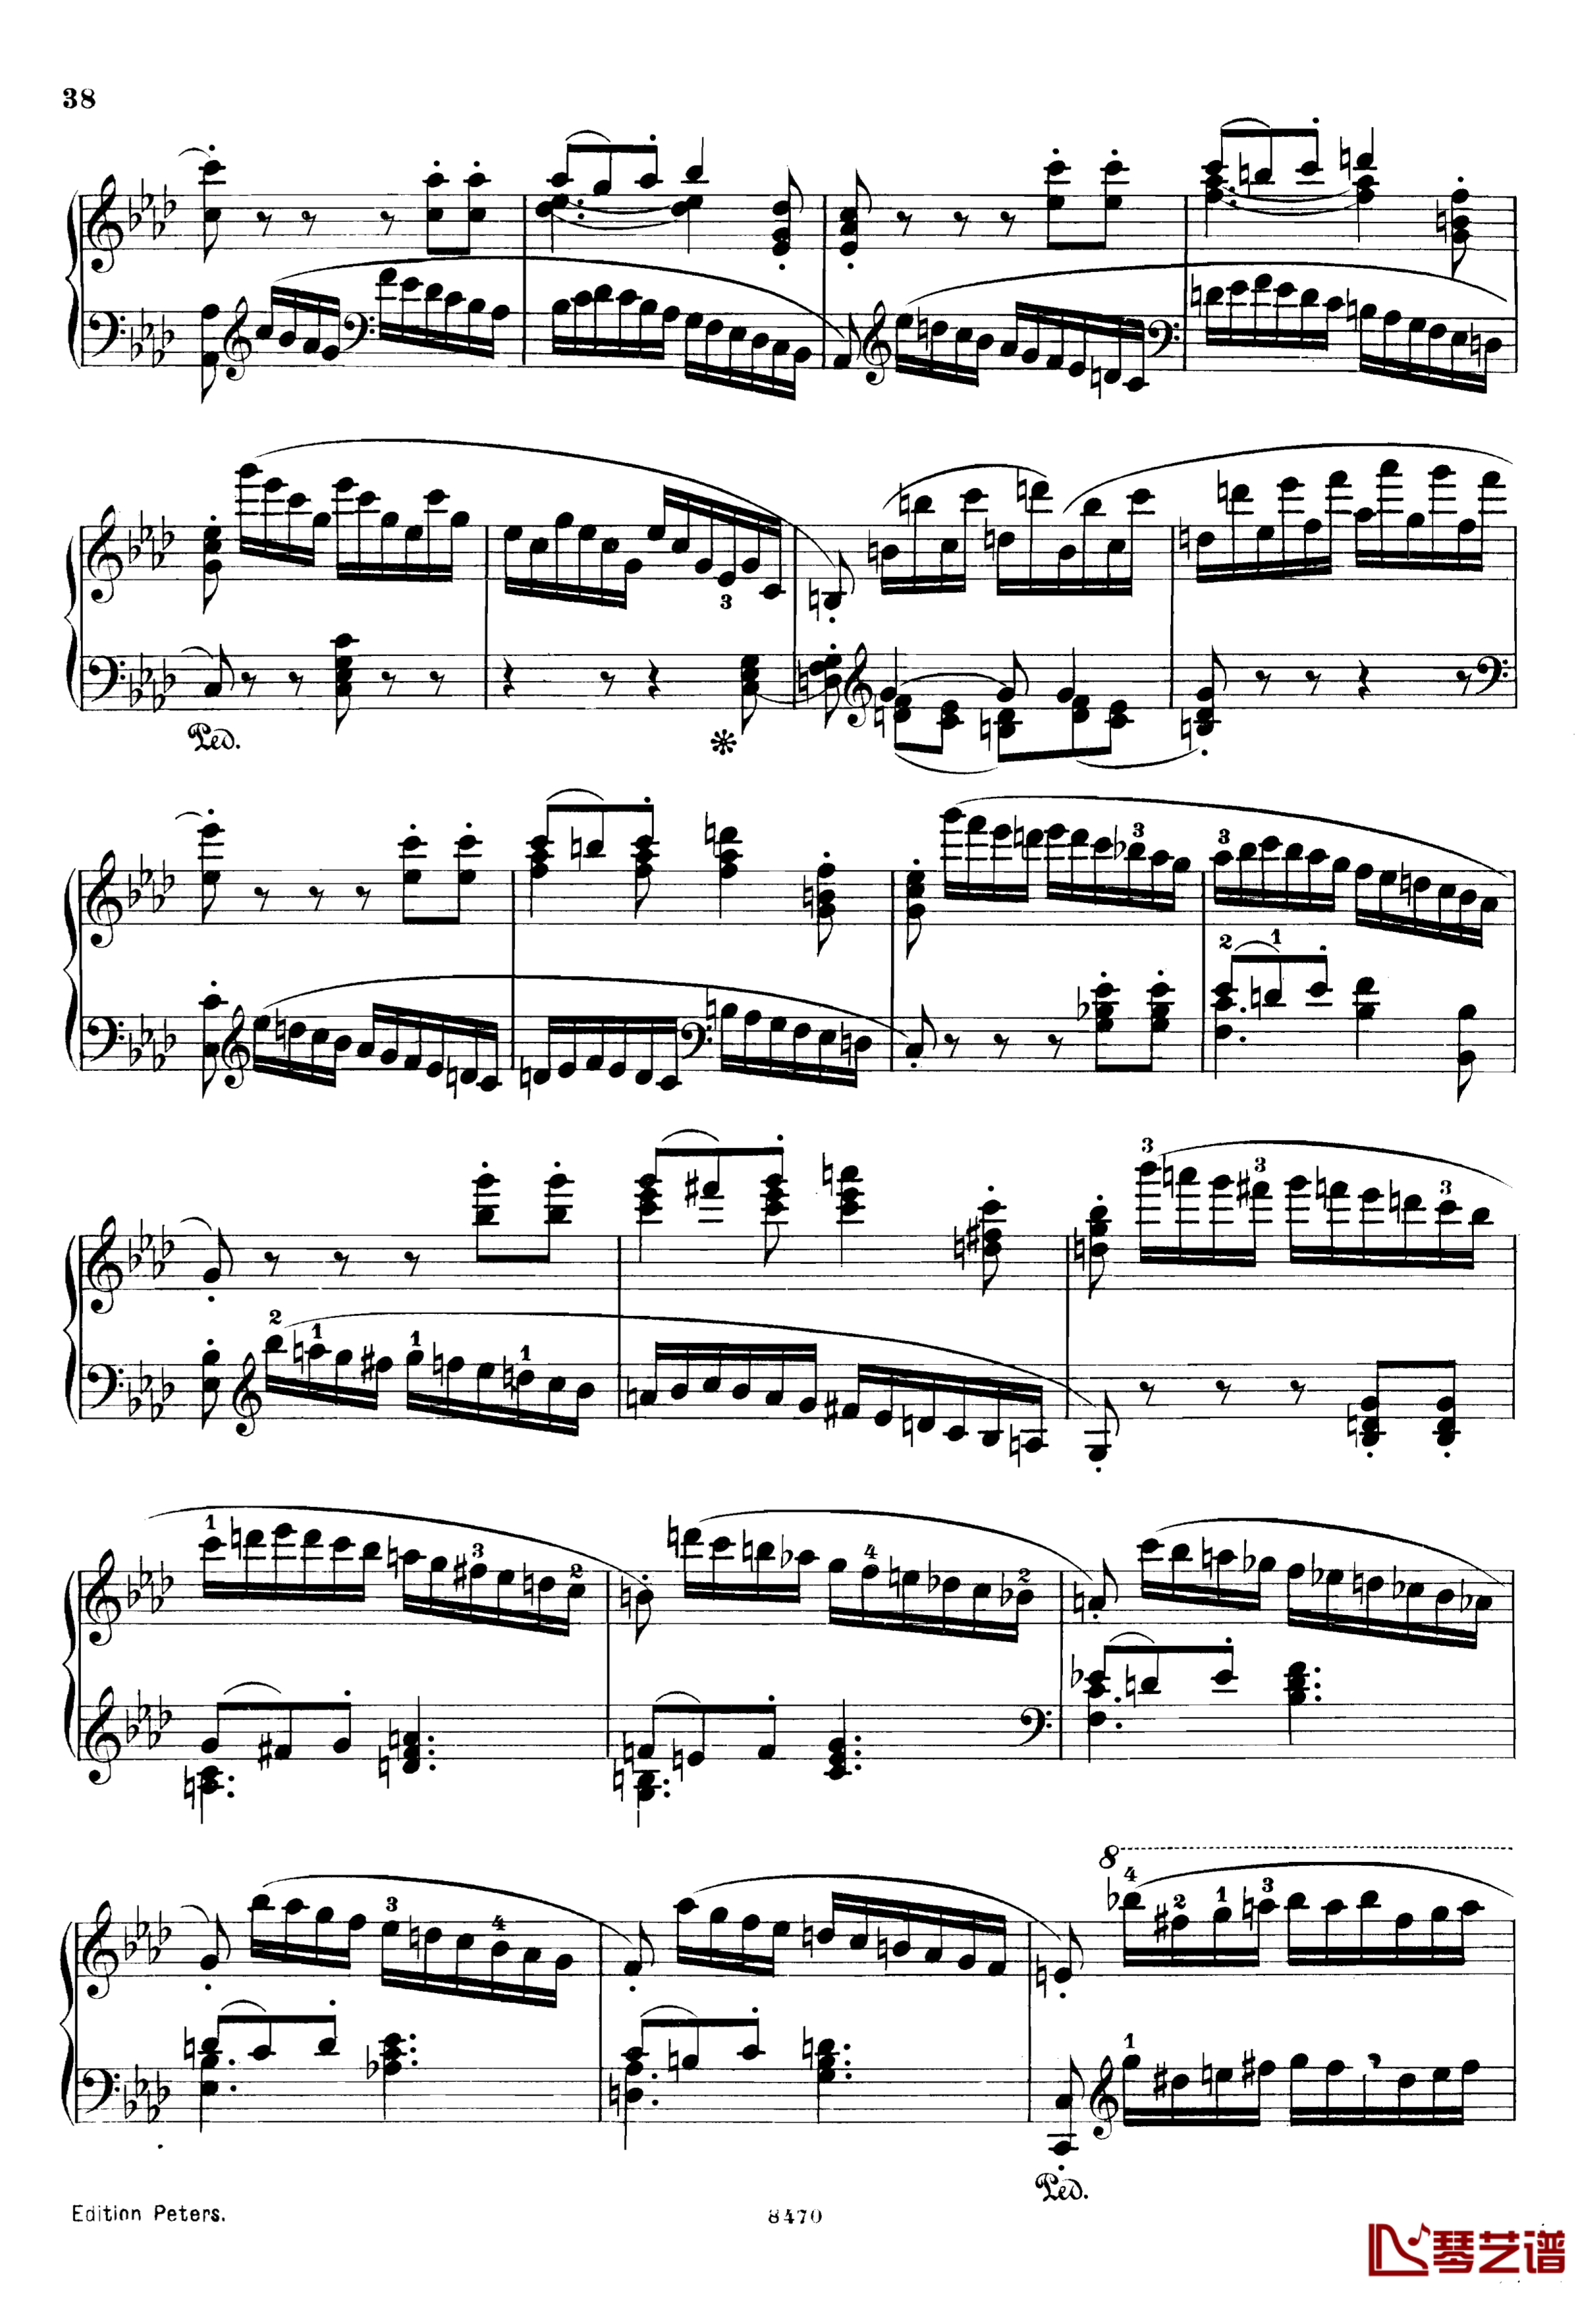 升c小调第三钢琴协奏曲Op.55钢琴谱-克里斯蒂安-里斯38